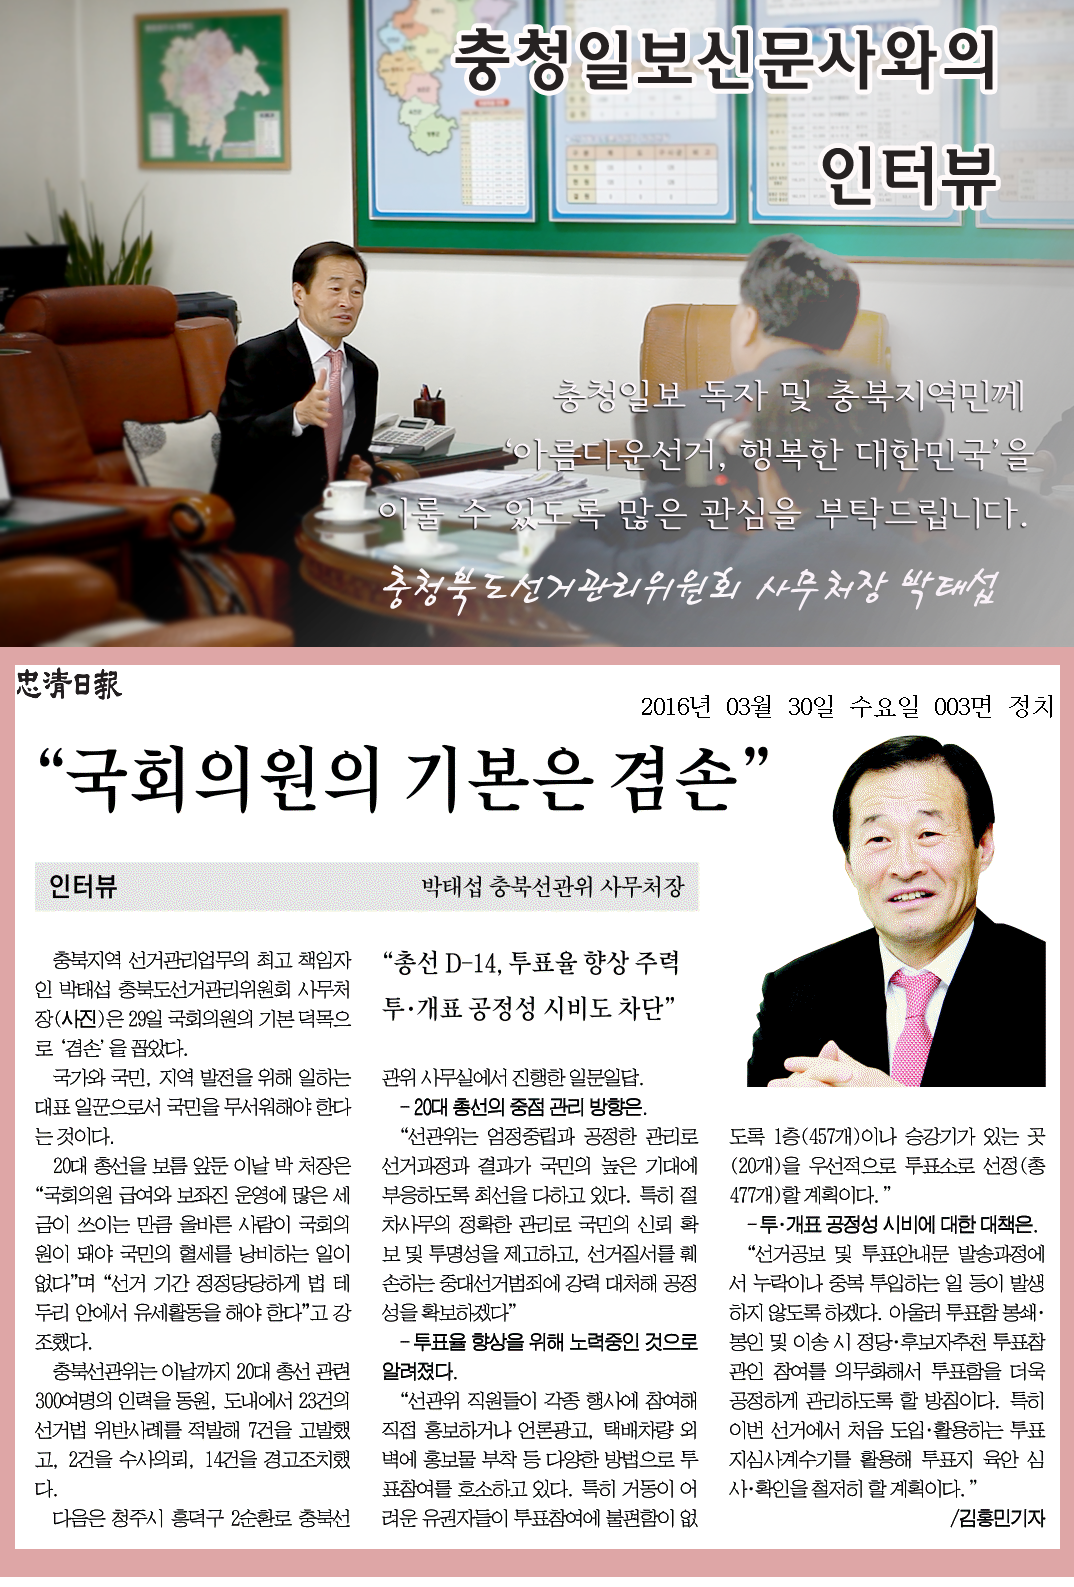 인터뷰자료_충청일보 독자 및 충북지역민께 '아름다운 선거, 행복한 대한민국'을 이룰 수 있도록 많은 관심 부탁드립니다.